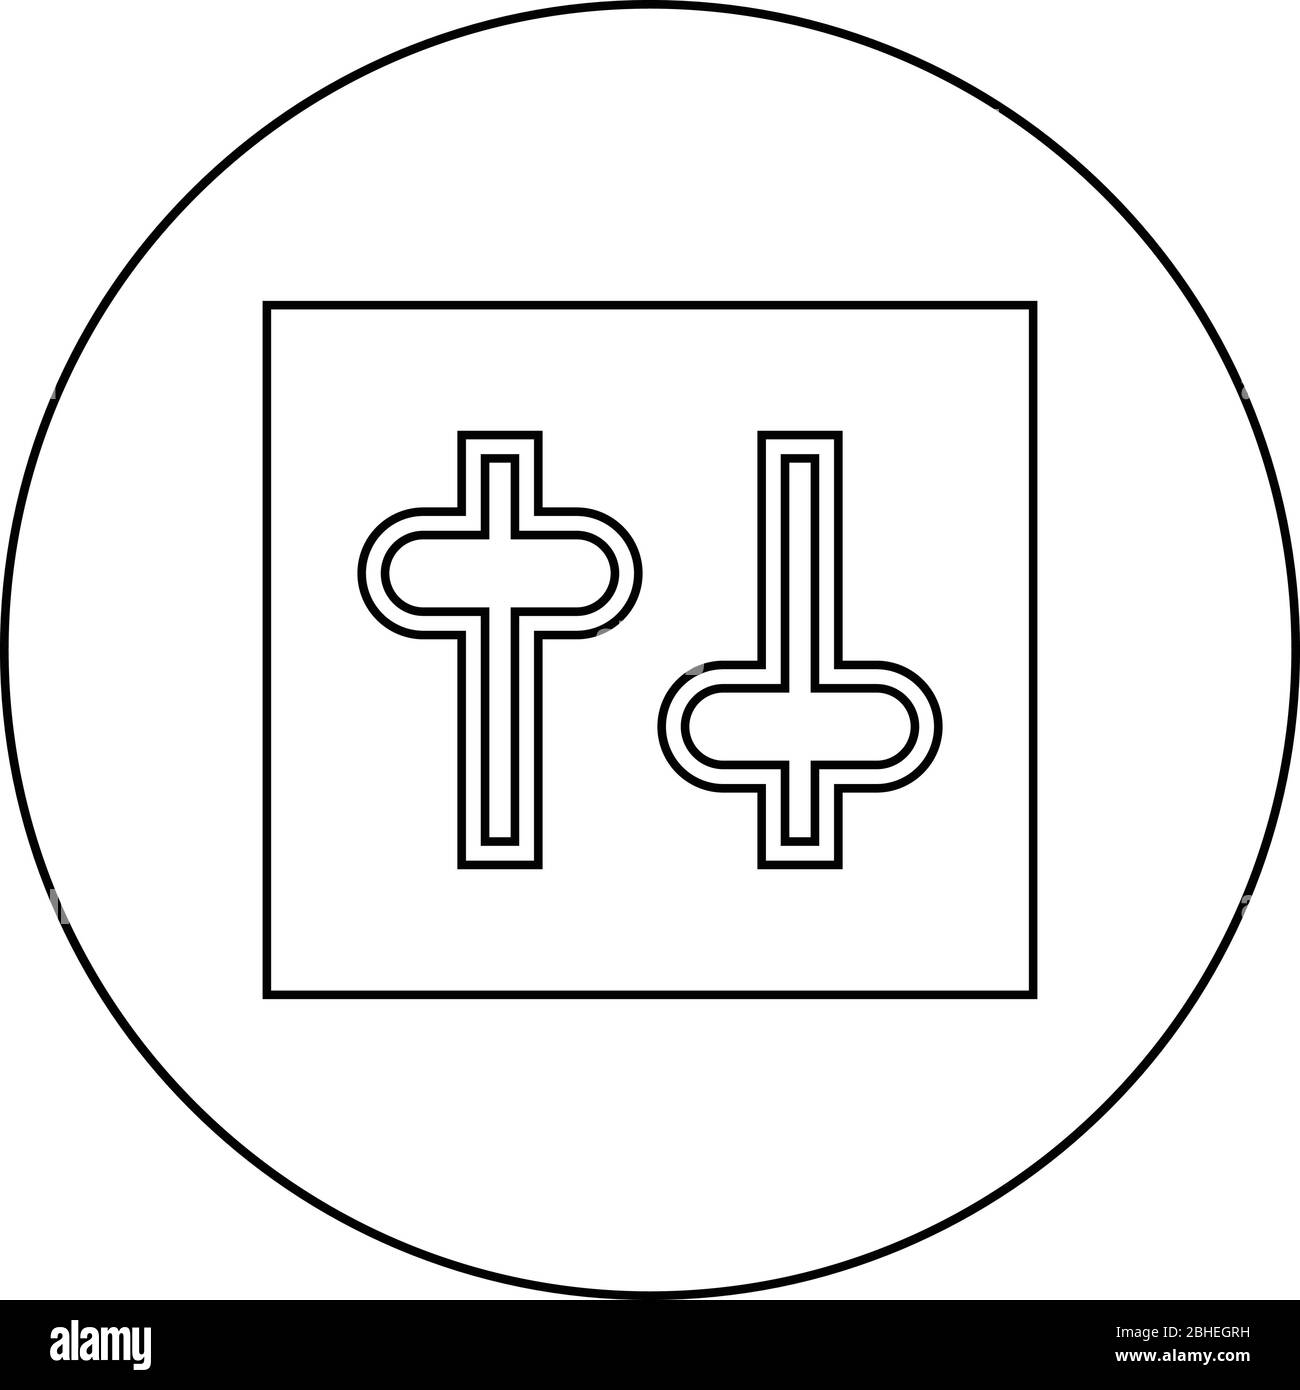 Einstellungen Knopf Einstellung Schalter Regler Symbol im Kreis runde Kontur schwarz Farbe Vektor Illustration flach Stil einfaches Bild Stock Vektor